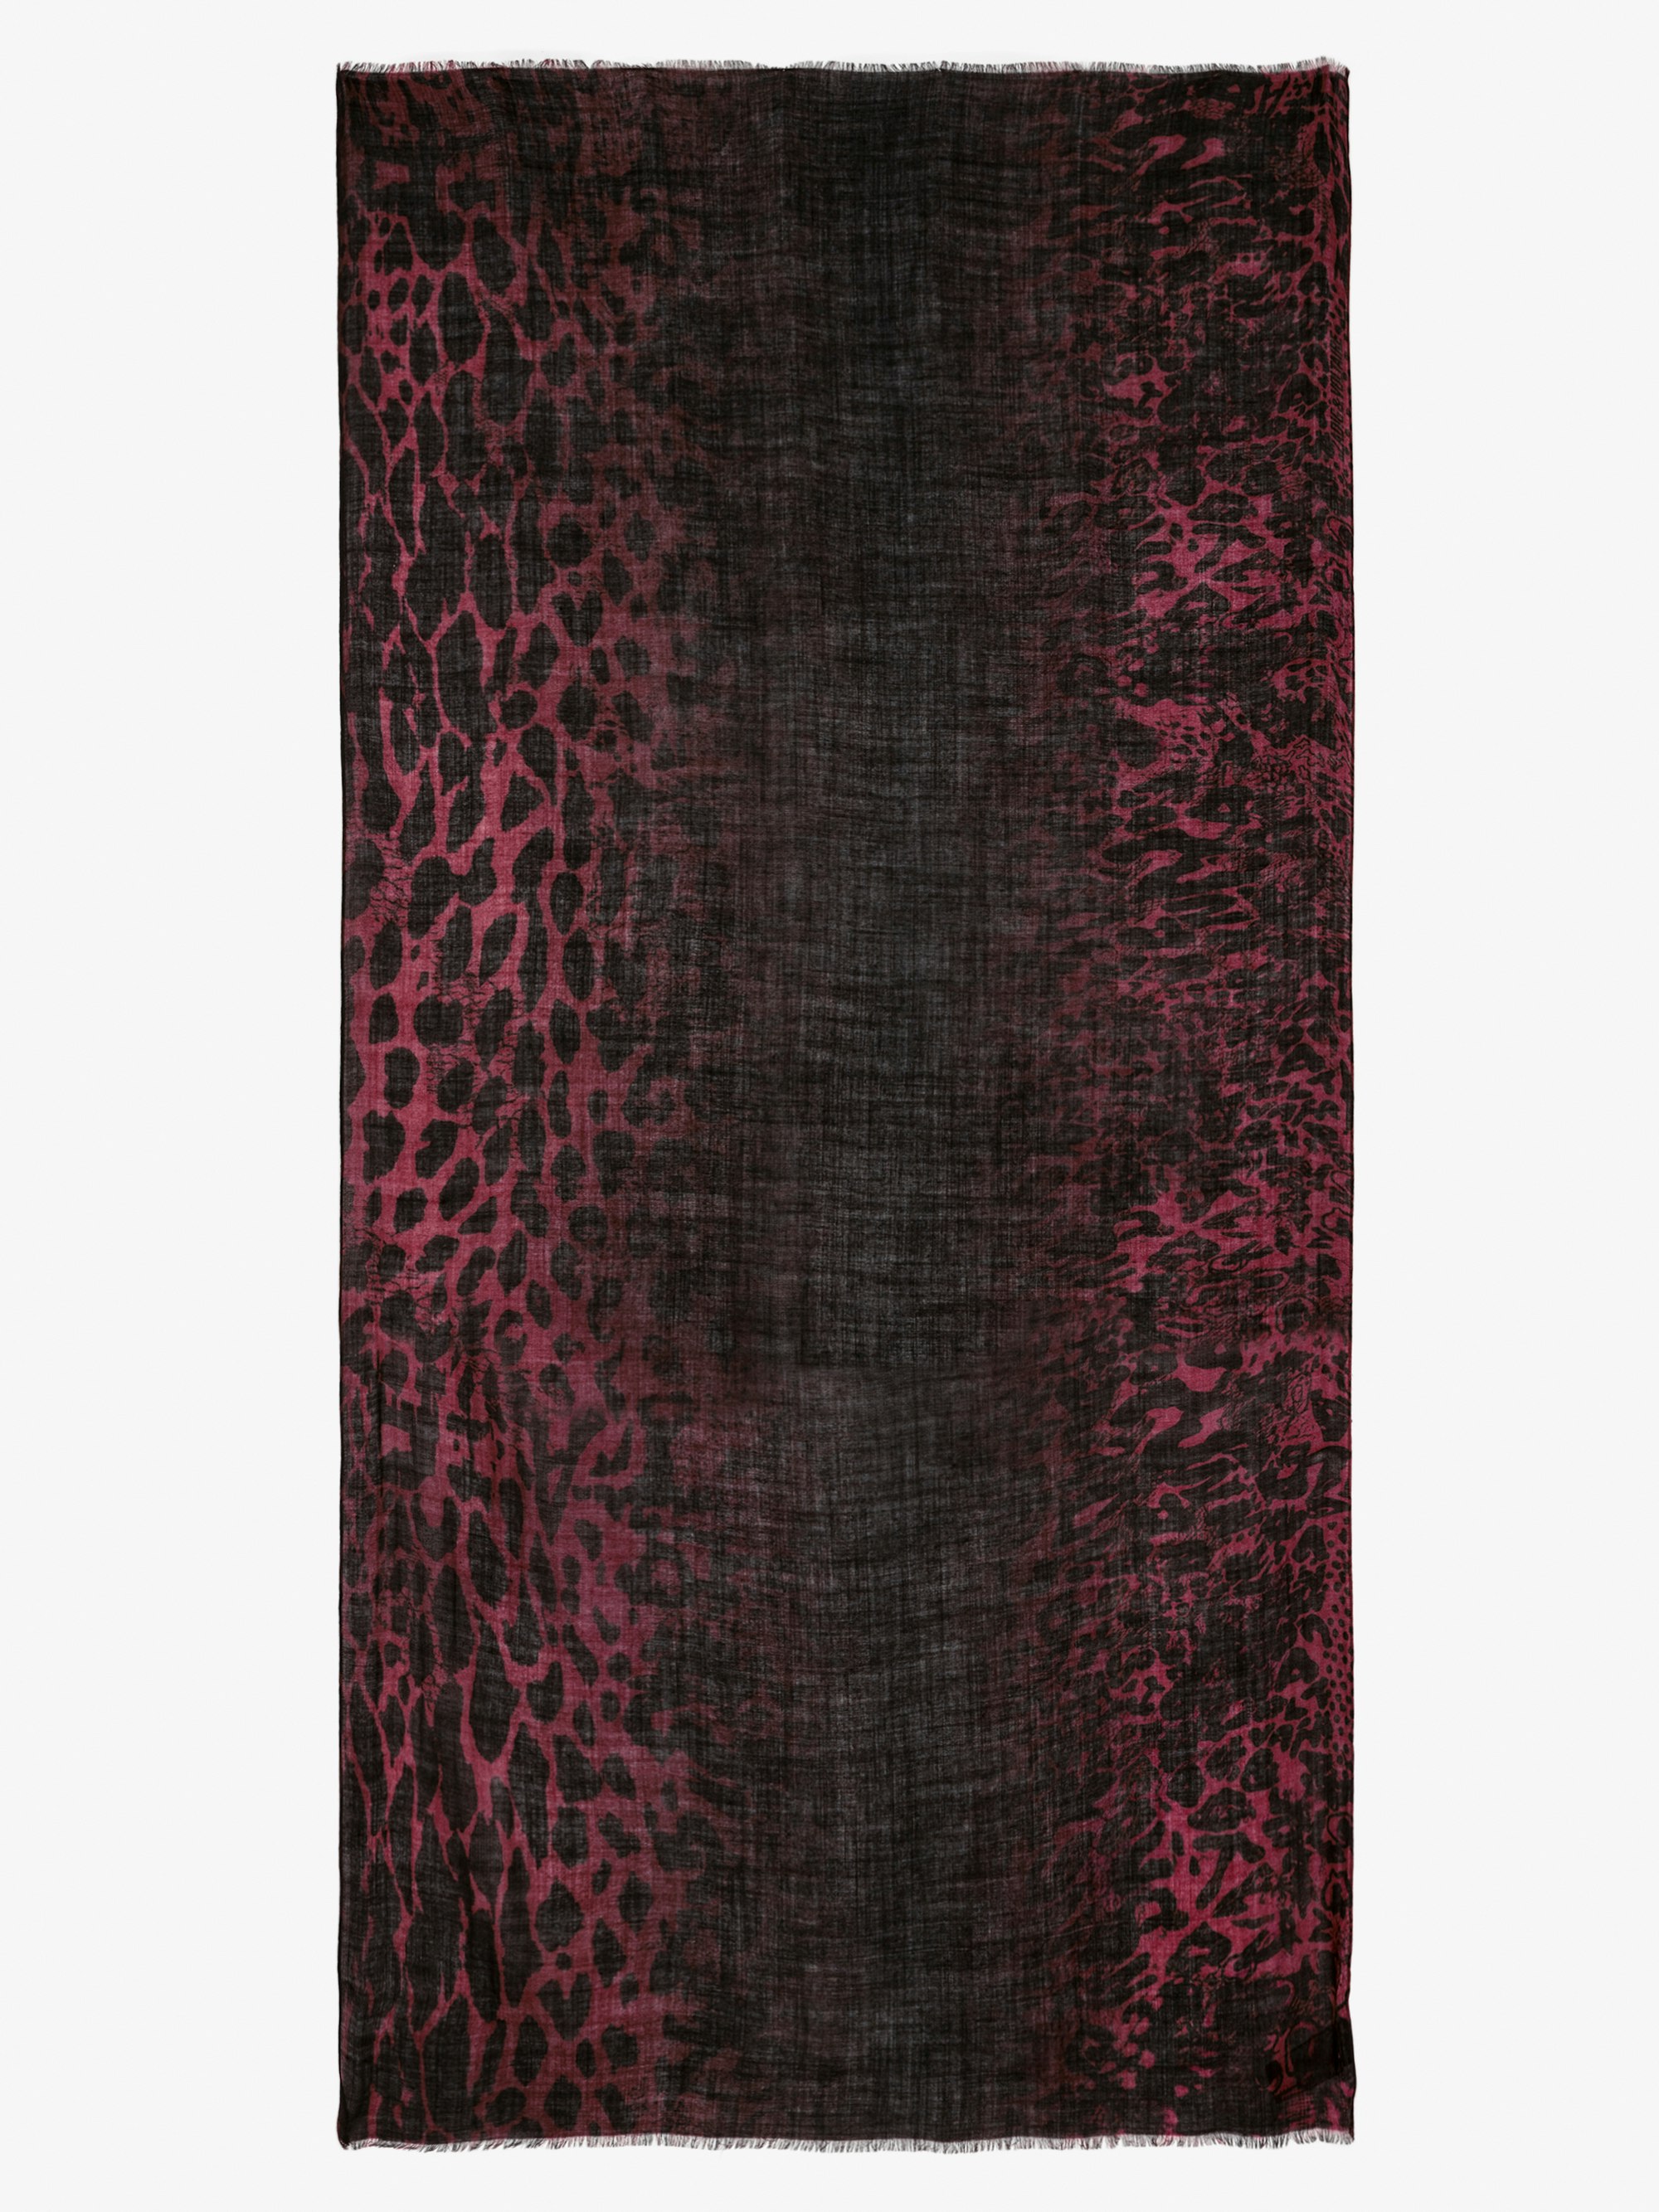 Halstuch Judy - Rotes Wolltuch mit Leopardenprint in Batikoptik.